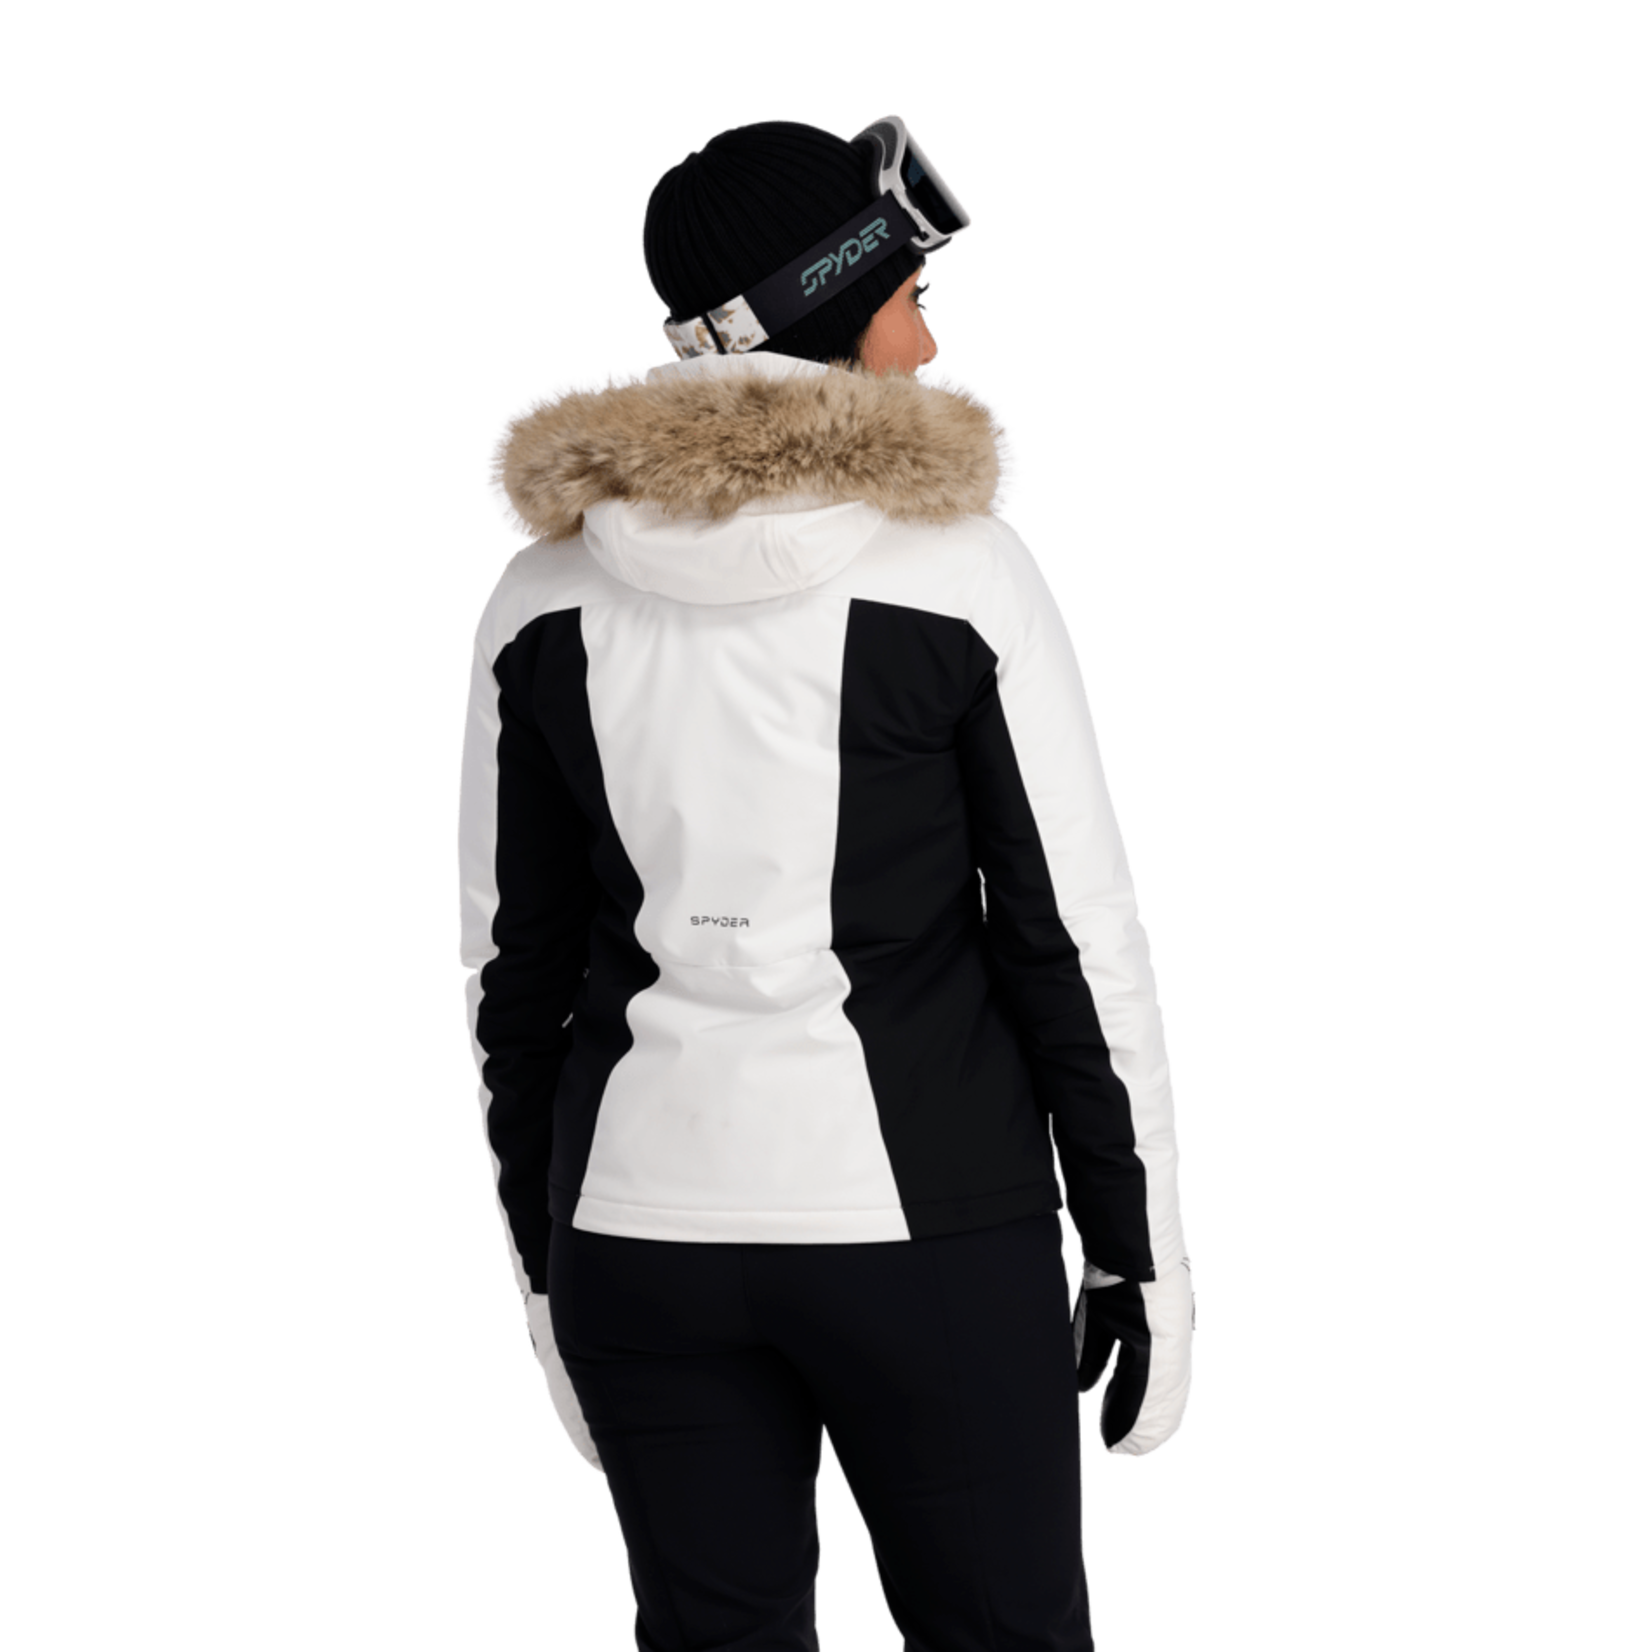 https://cdn.shoplightspeed.com/shops/621397/files/50262739/1652x1652x2/spyder-spyder-womens-vida-insulated-jacket.jpg